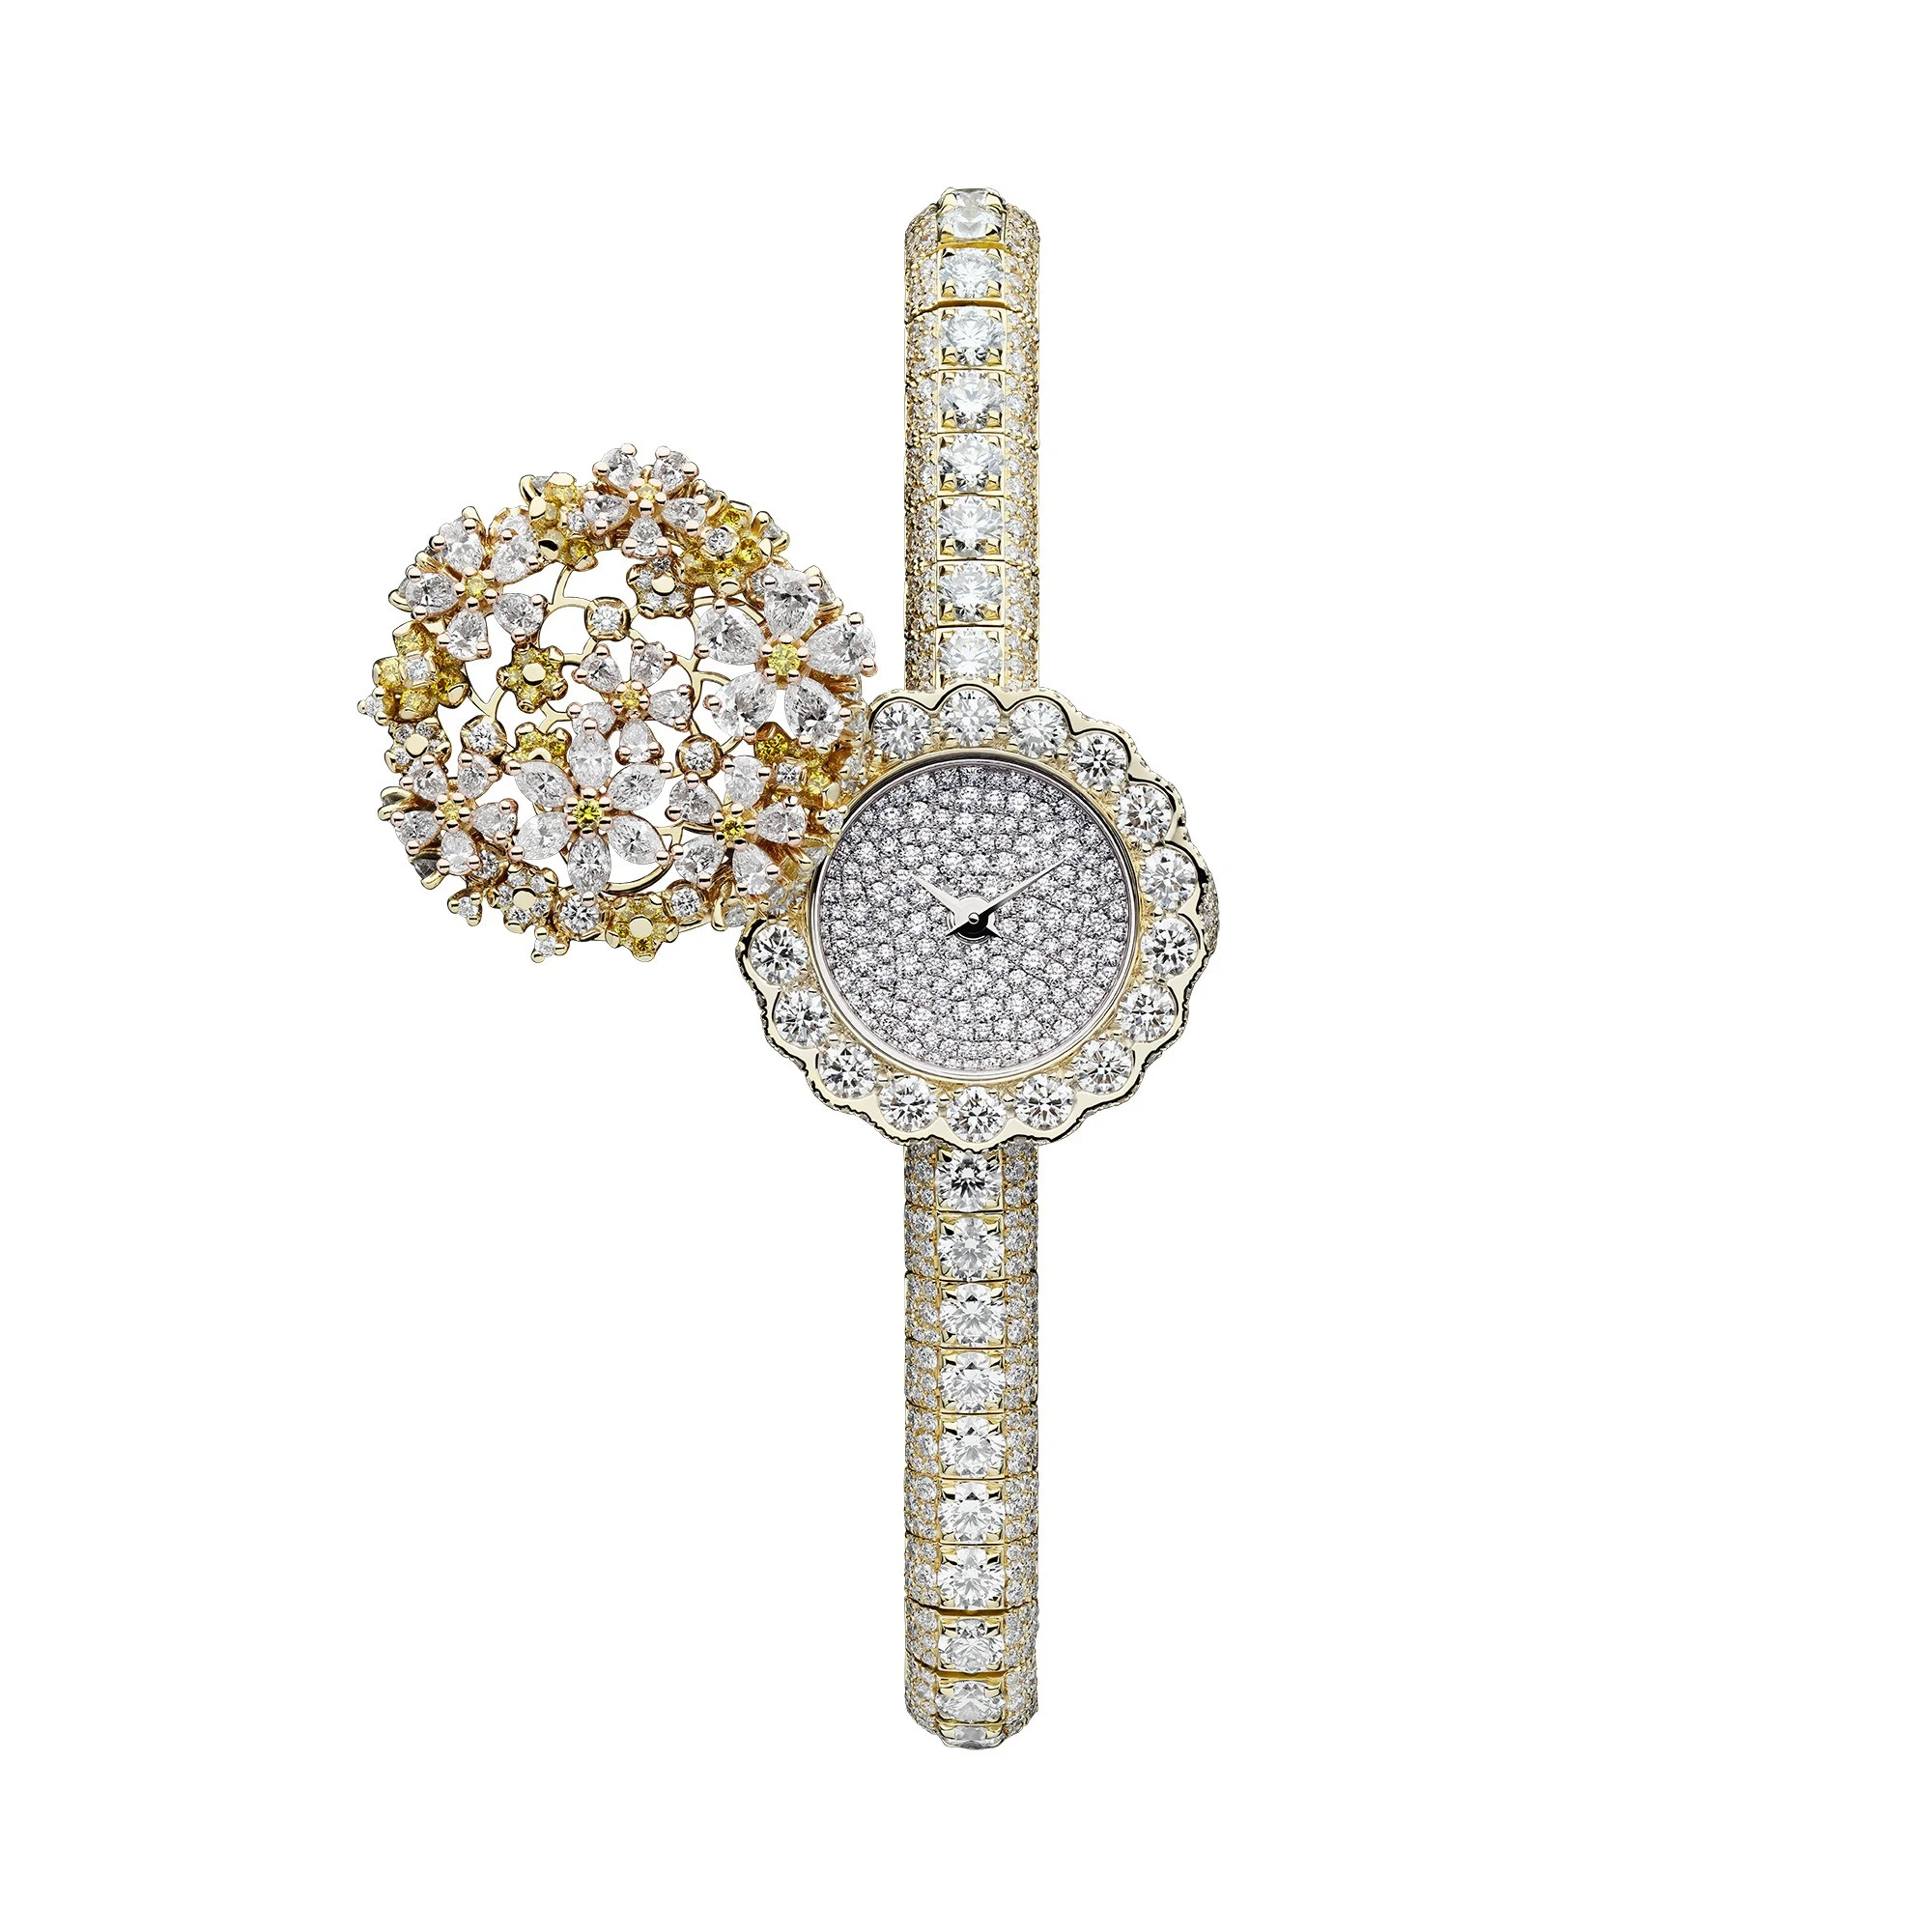 Секретные часы D de Dior Dentelle.  Фото: Диор